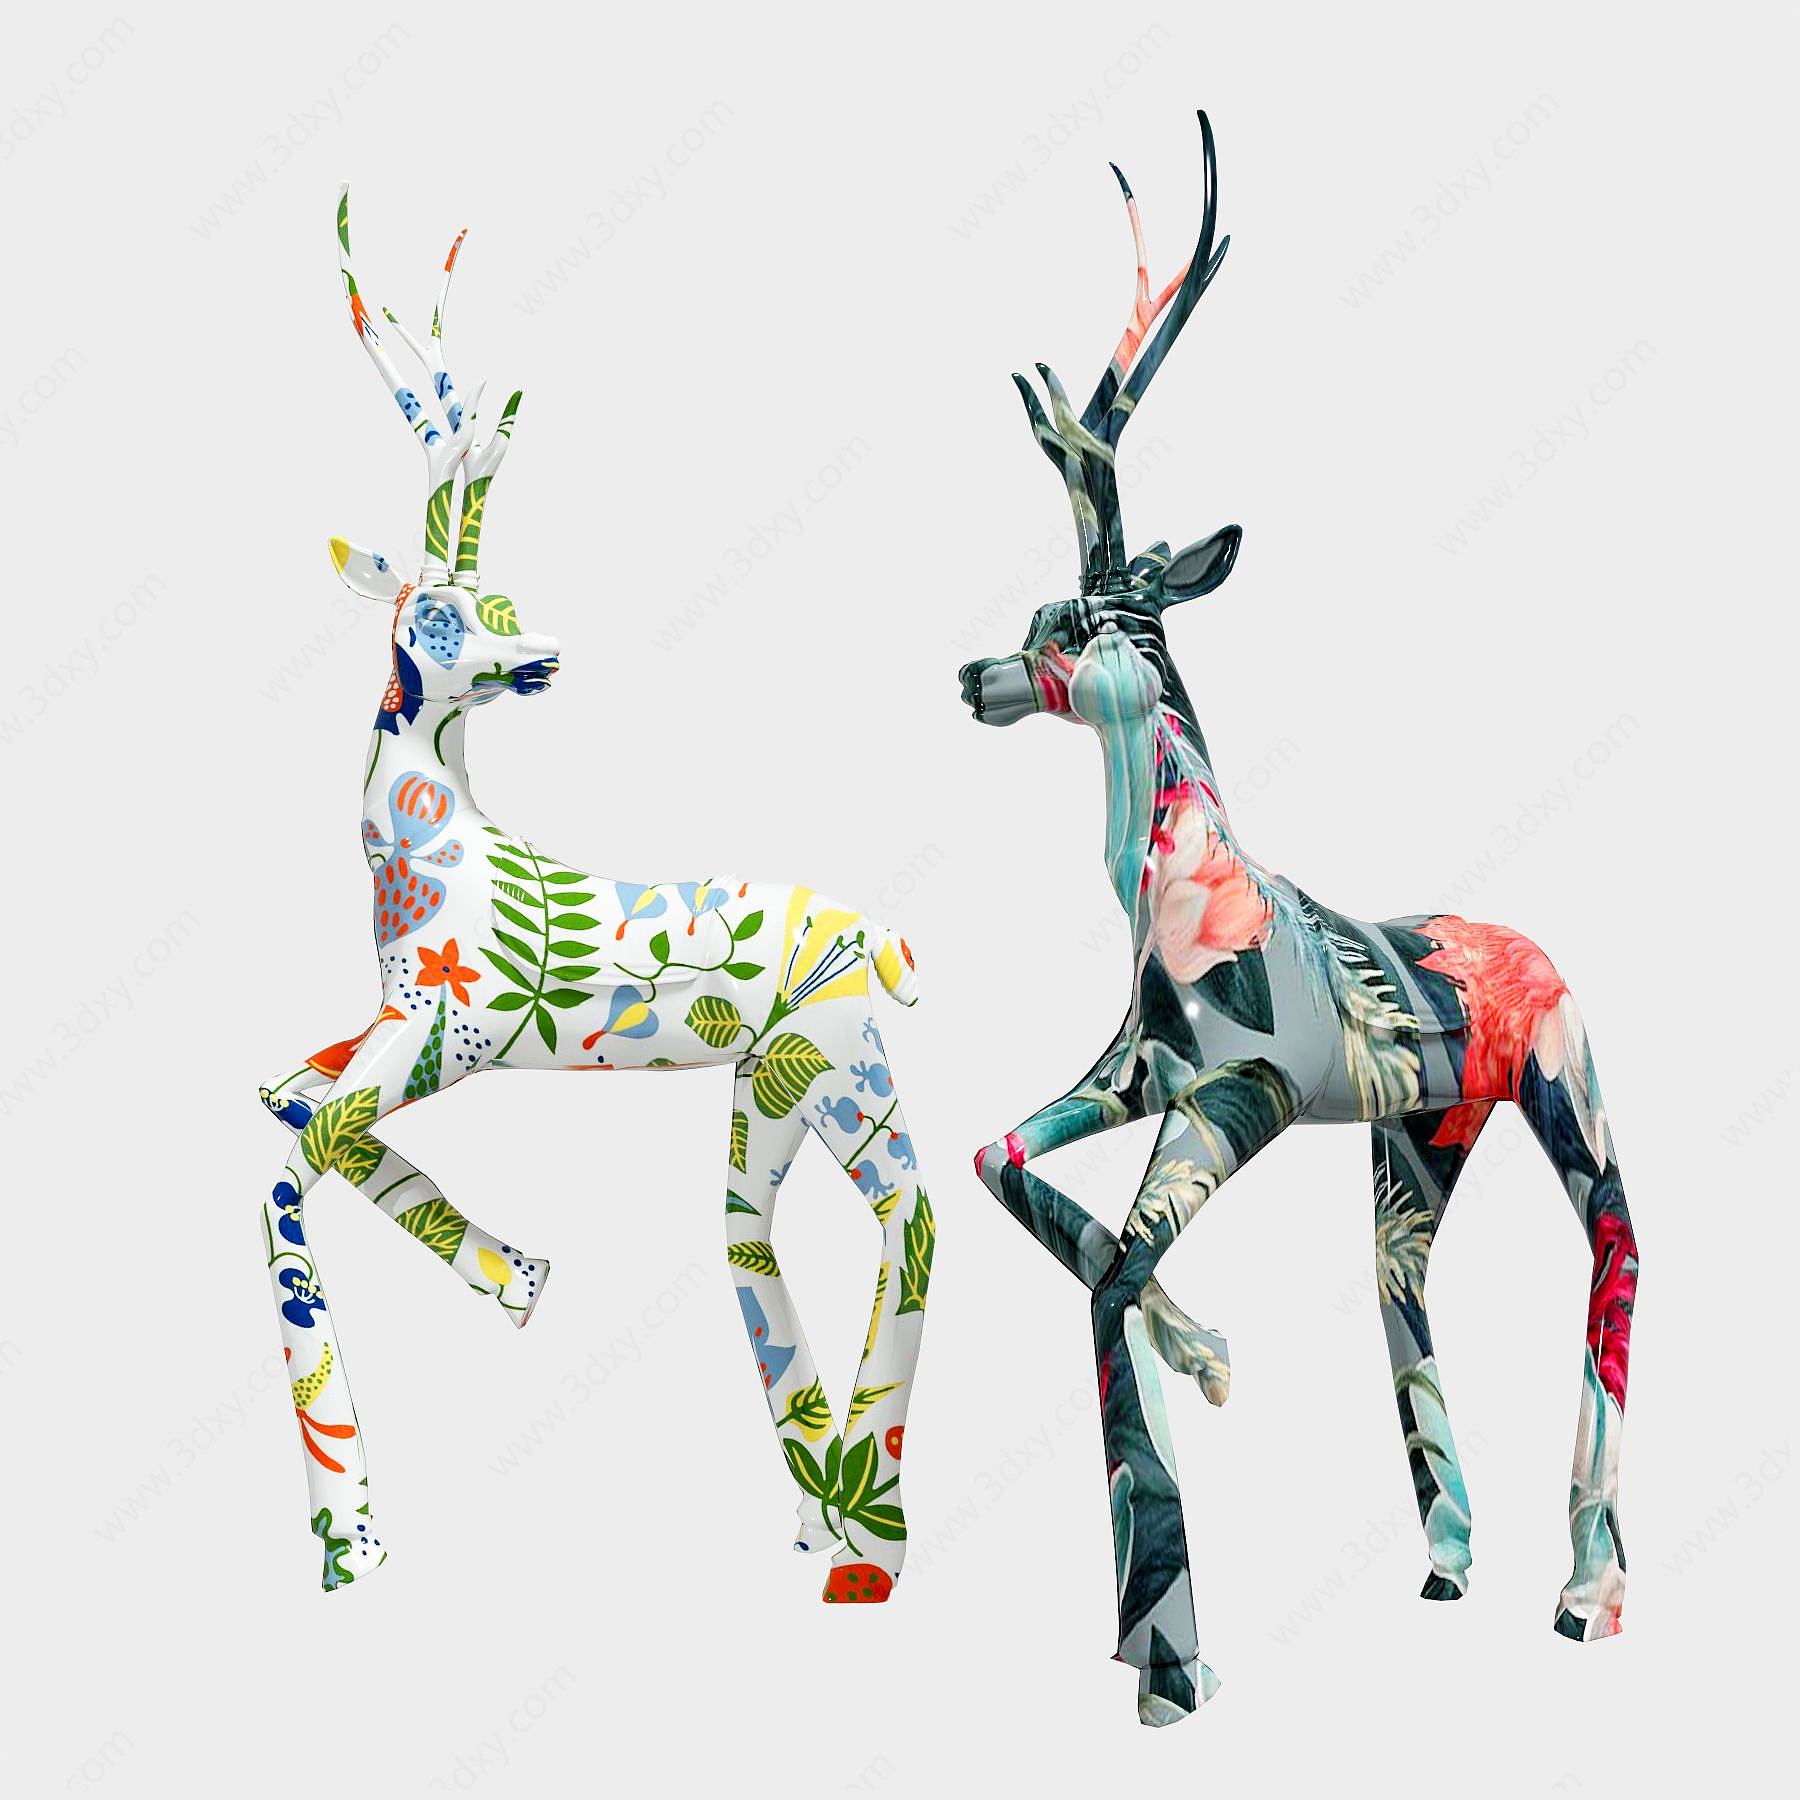 鹿雕塑3D模型